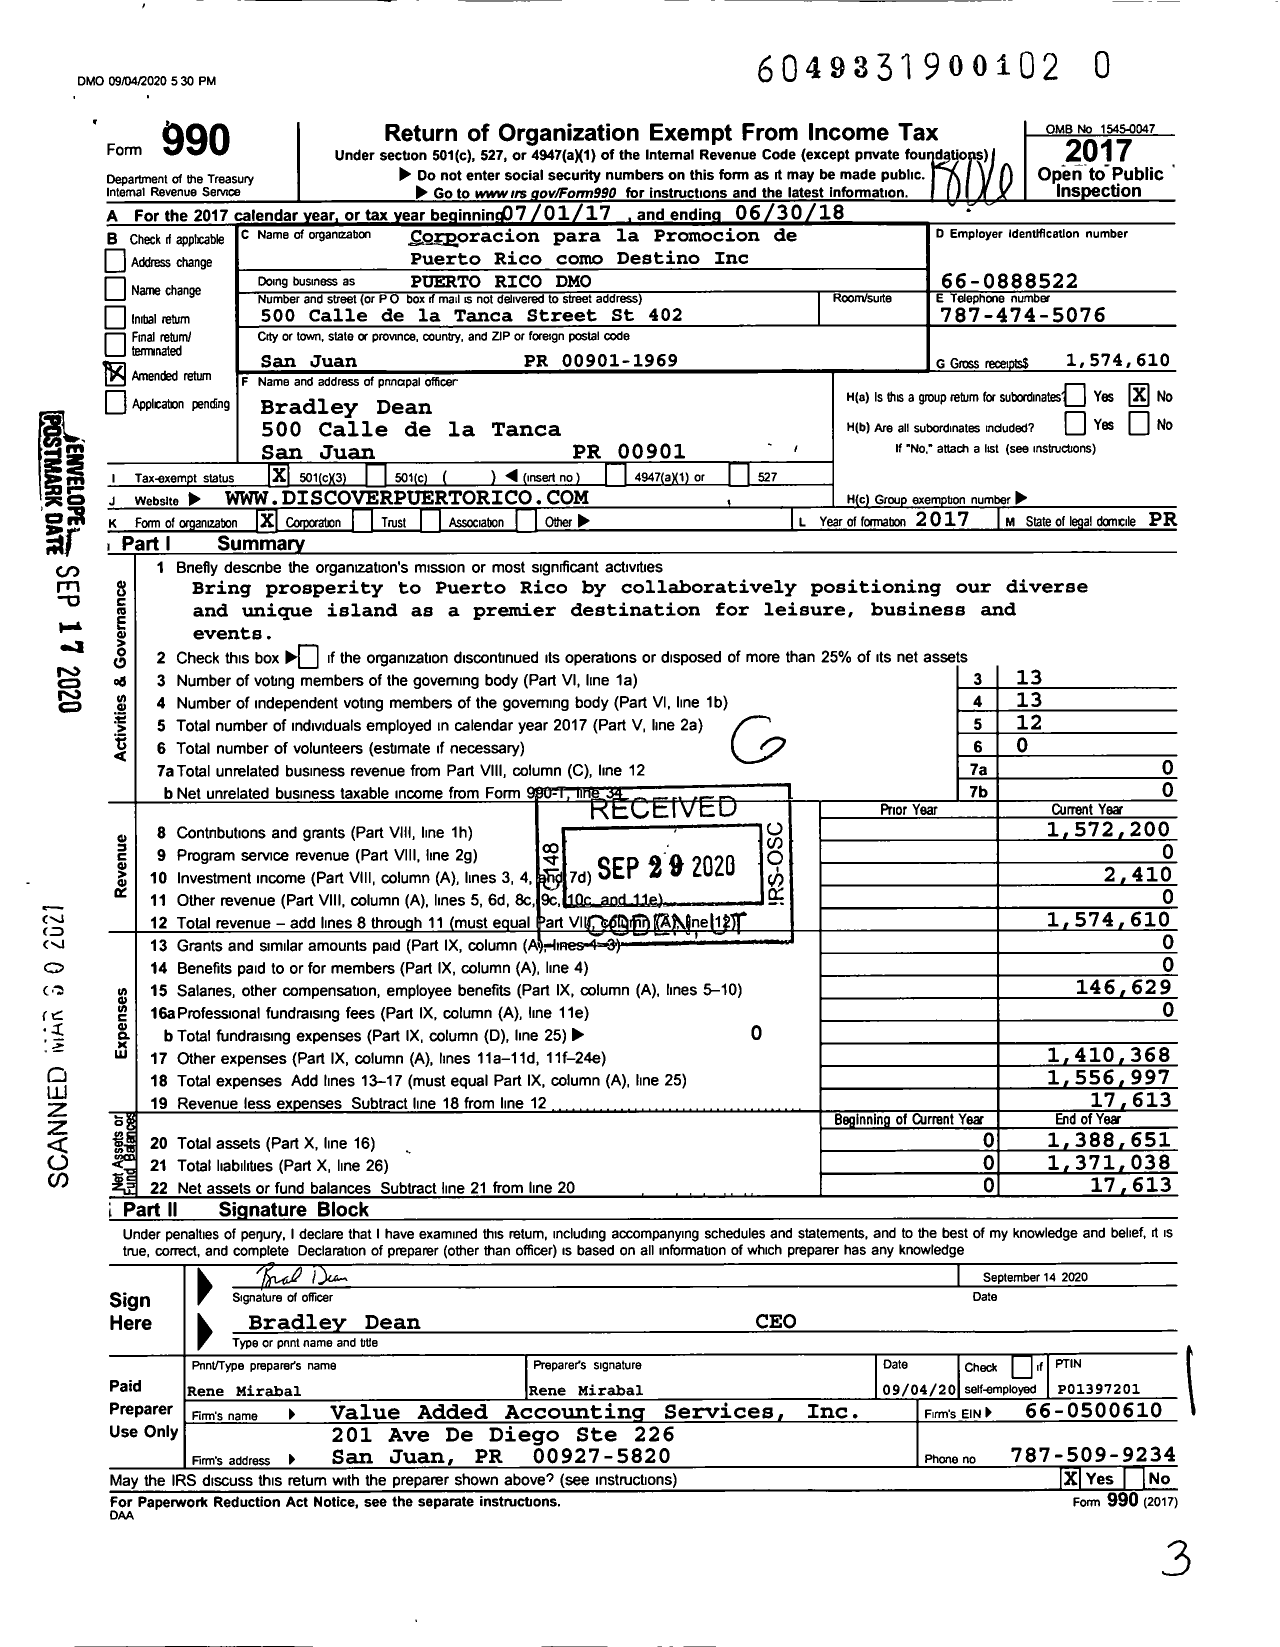 Image of first page of 2017 Form 990 for Corporacion Para La Promocion de Puerto Rico Como Destino